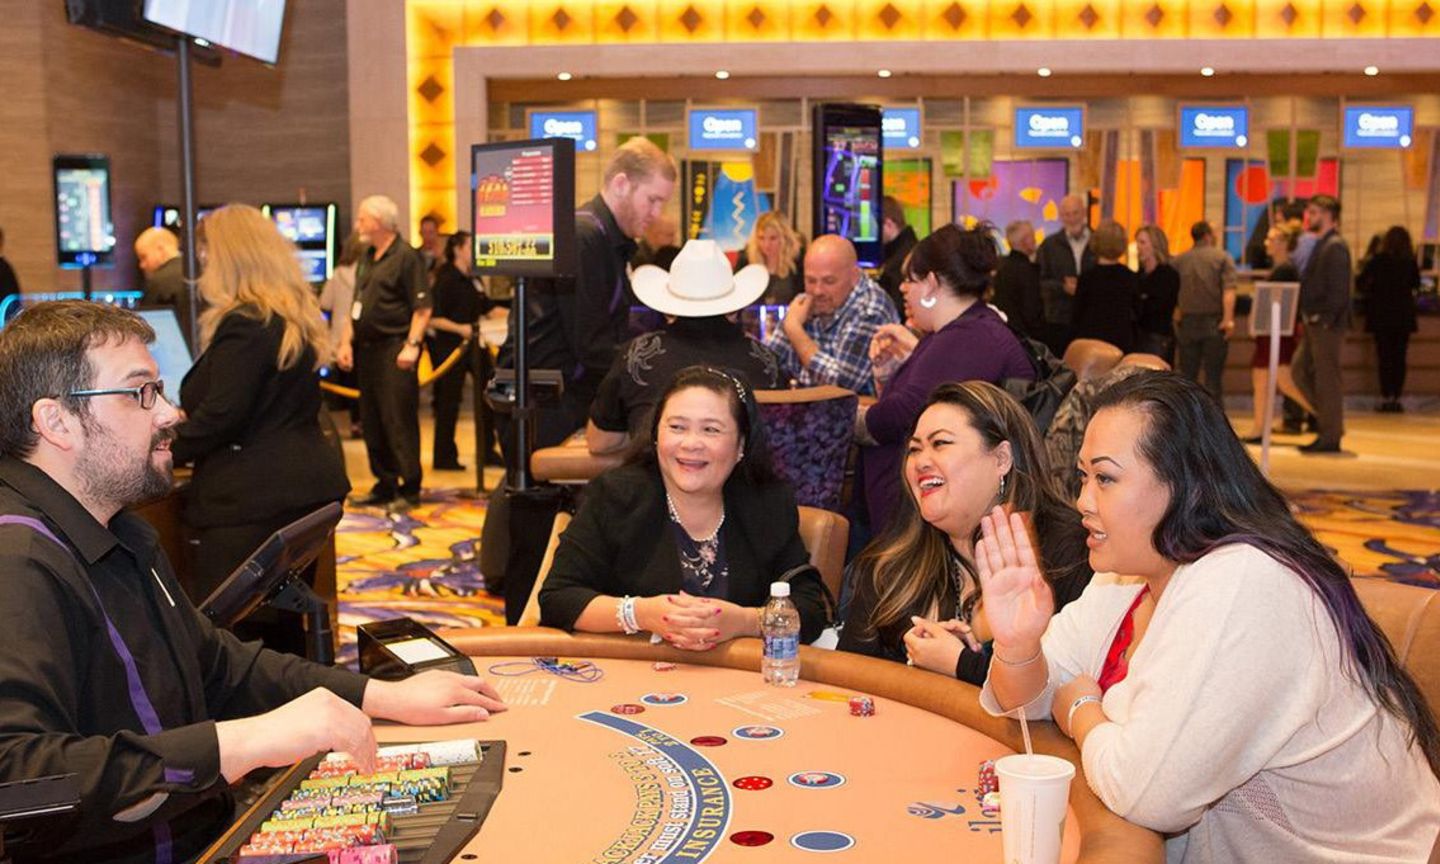 Casino adult gambling games slots blackjack